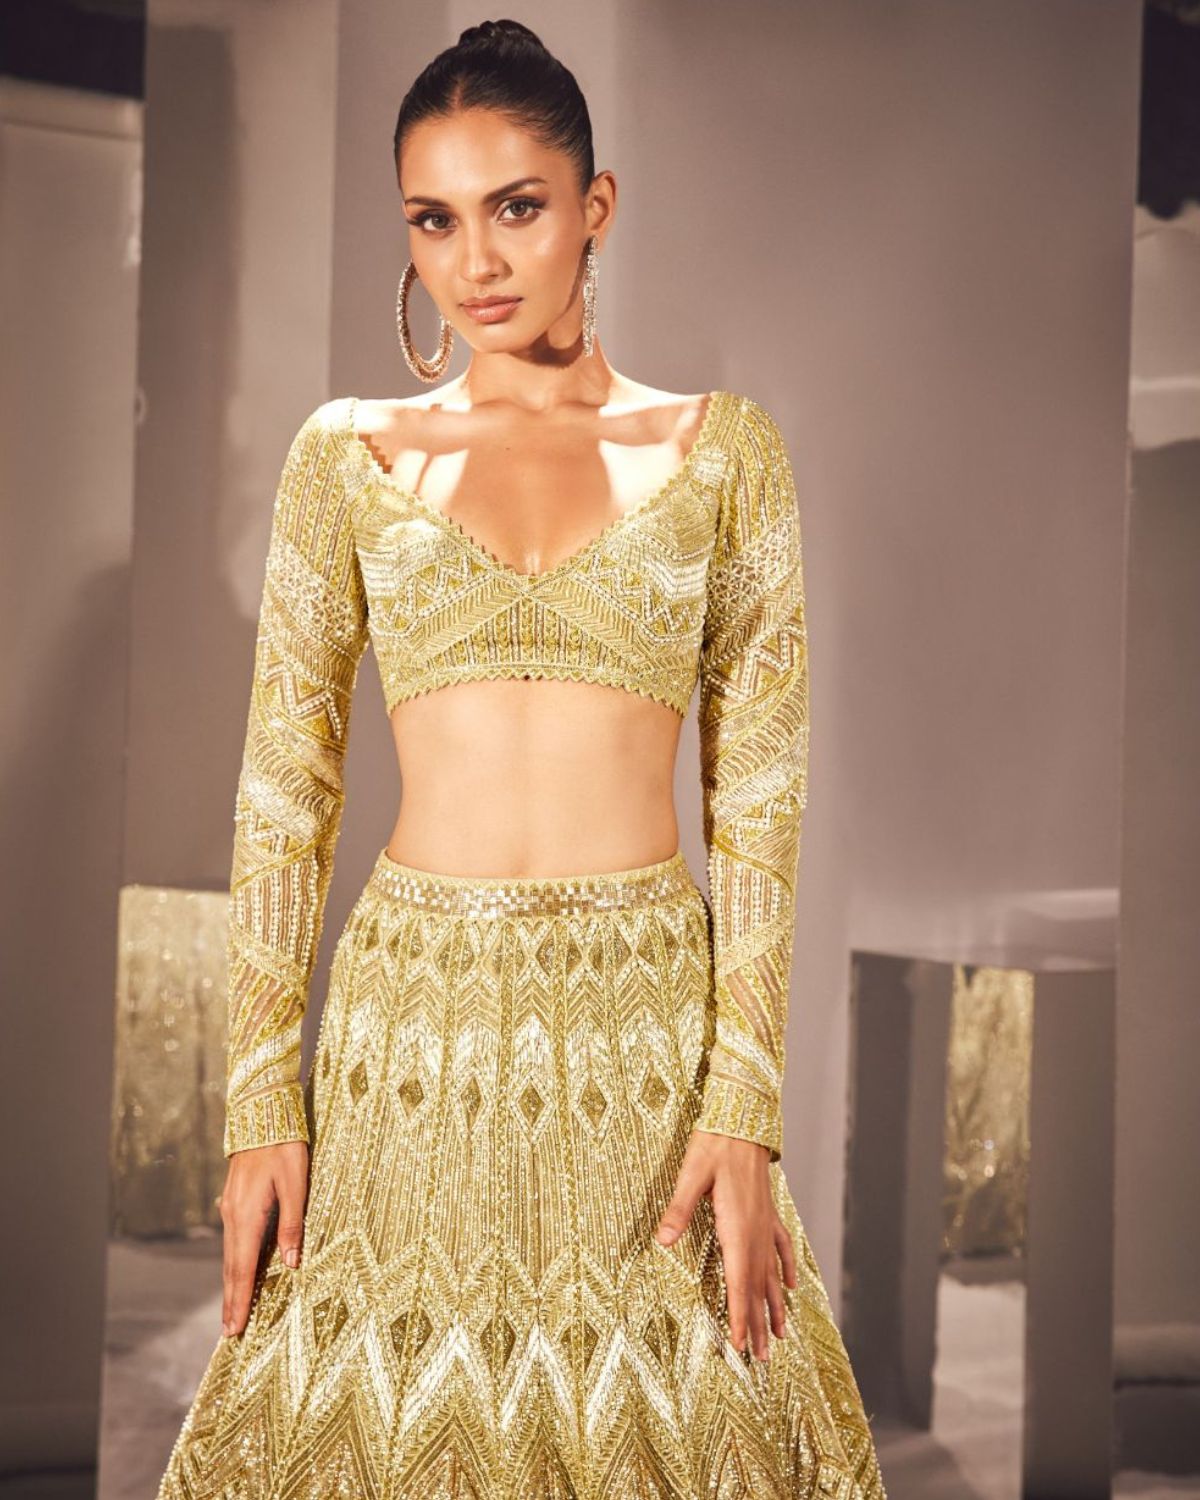 Buy Custom Made Golden Lehenga With Velvet Blouse. Indian Lehenga Online in  India - Etsy | Golden lehenga, Indian lehenga, Party wear dresses